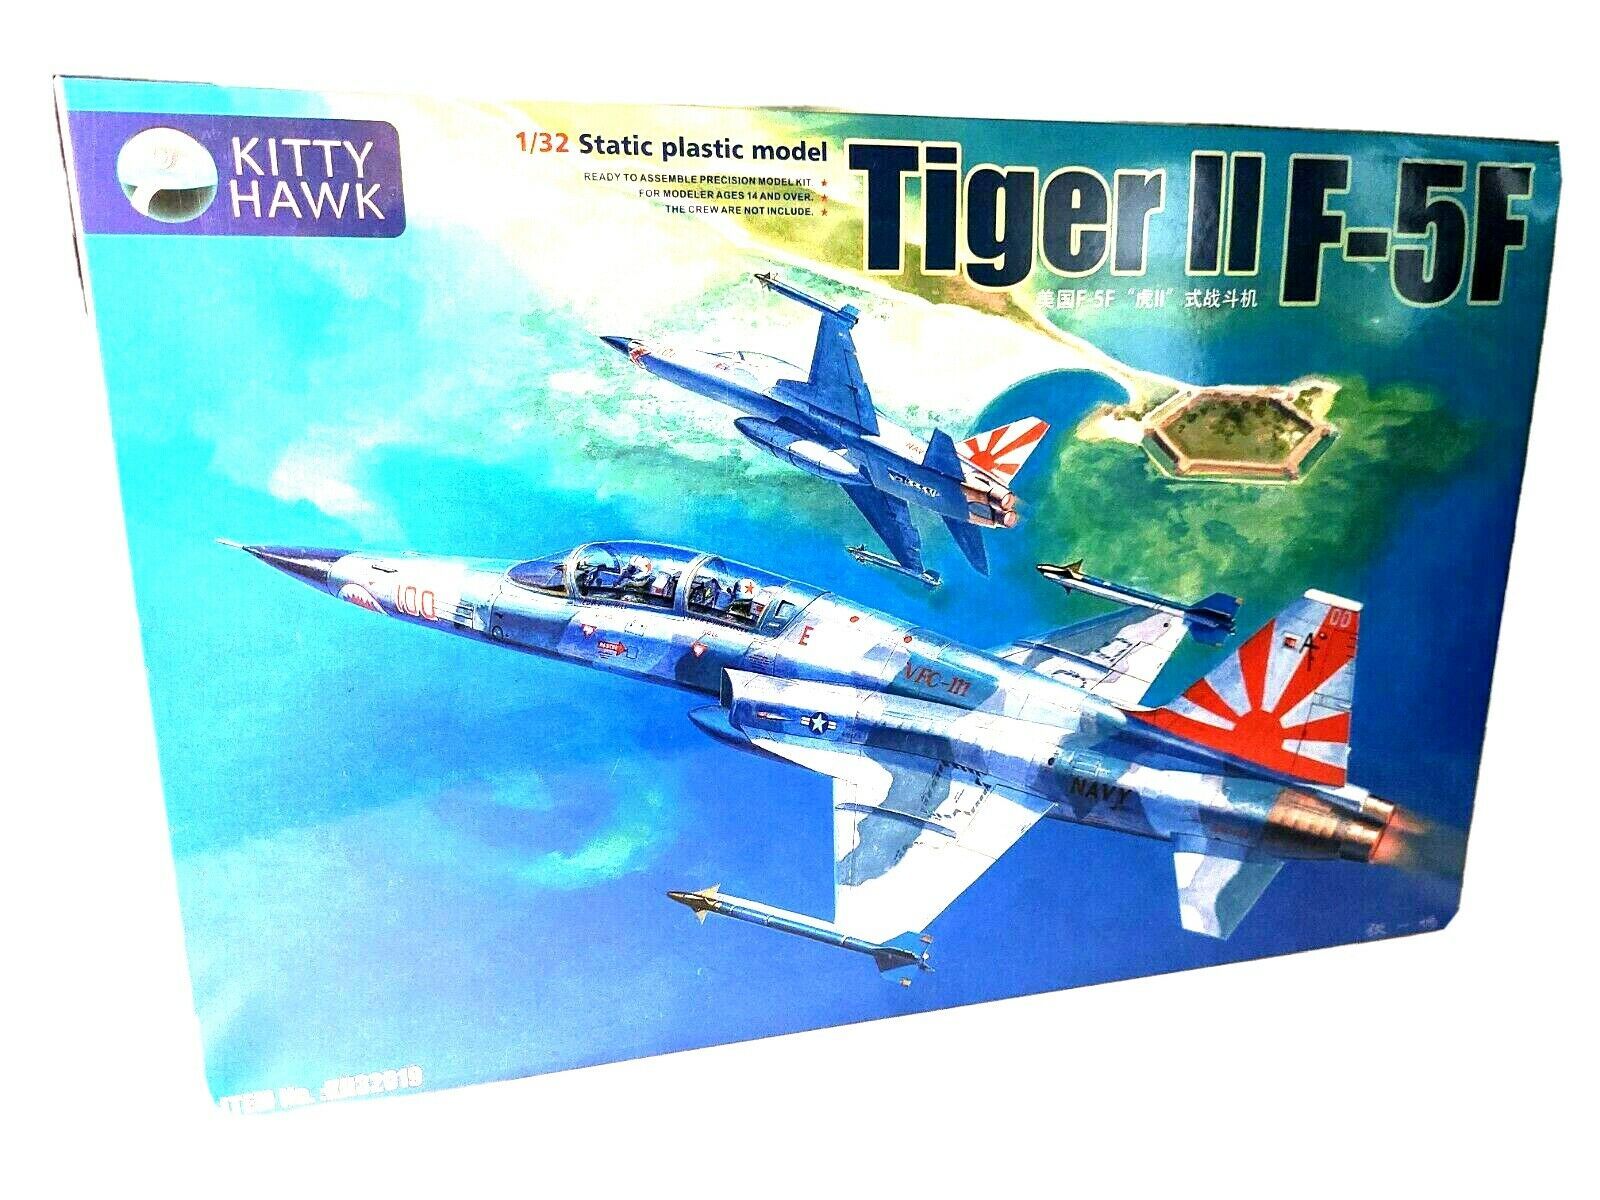 Kitty hawk models 32019 1:3 2 f-5f tiger II fighter new model kit ships usa